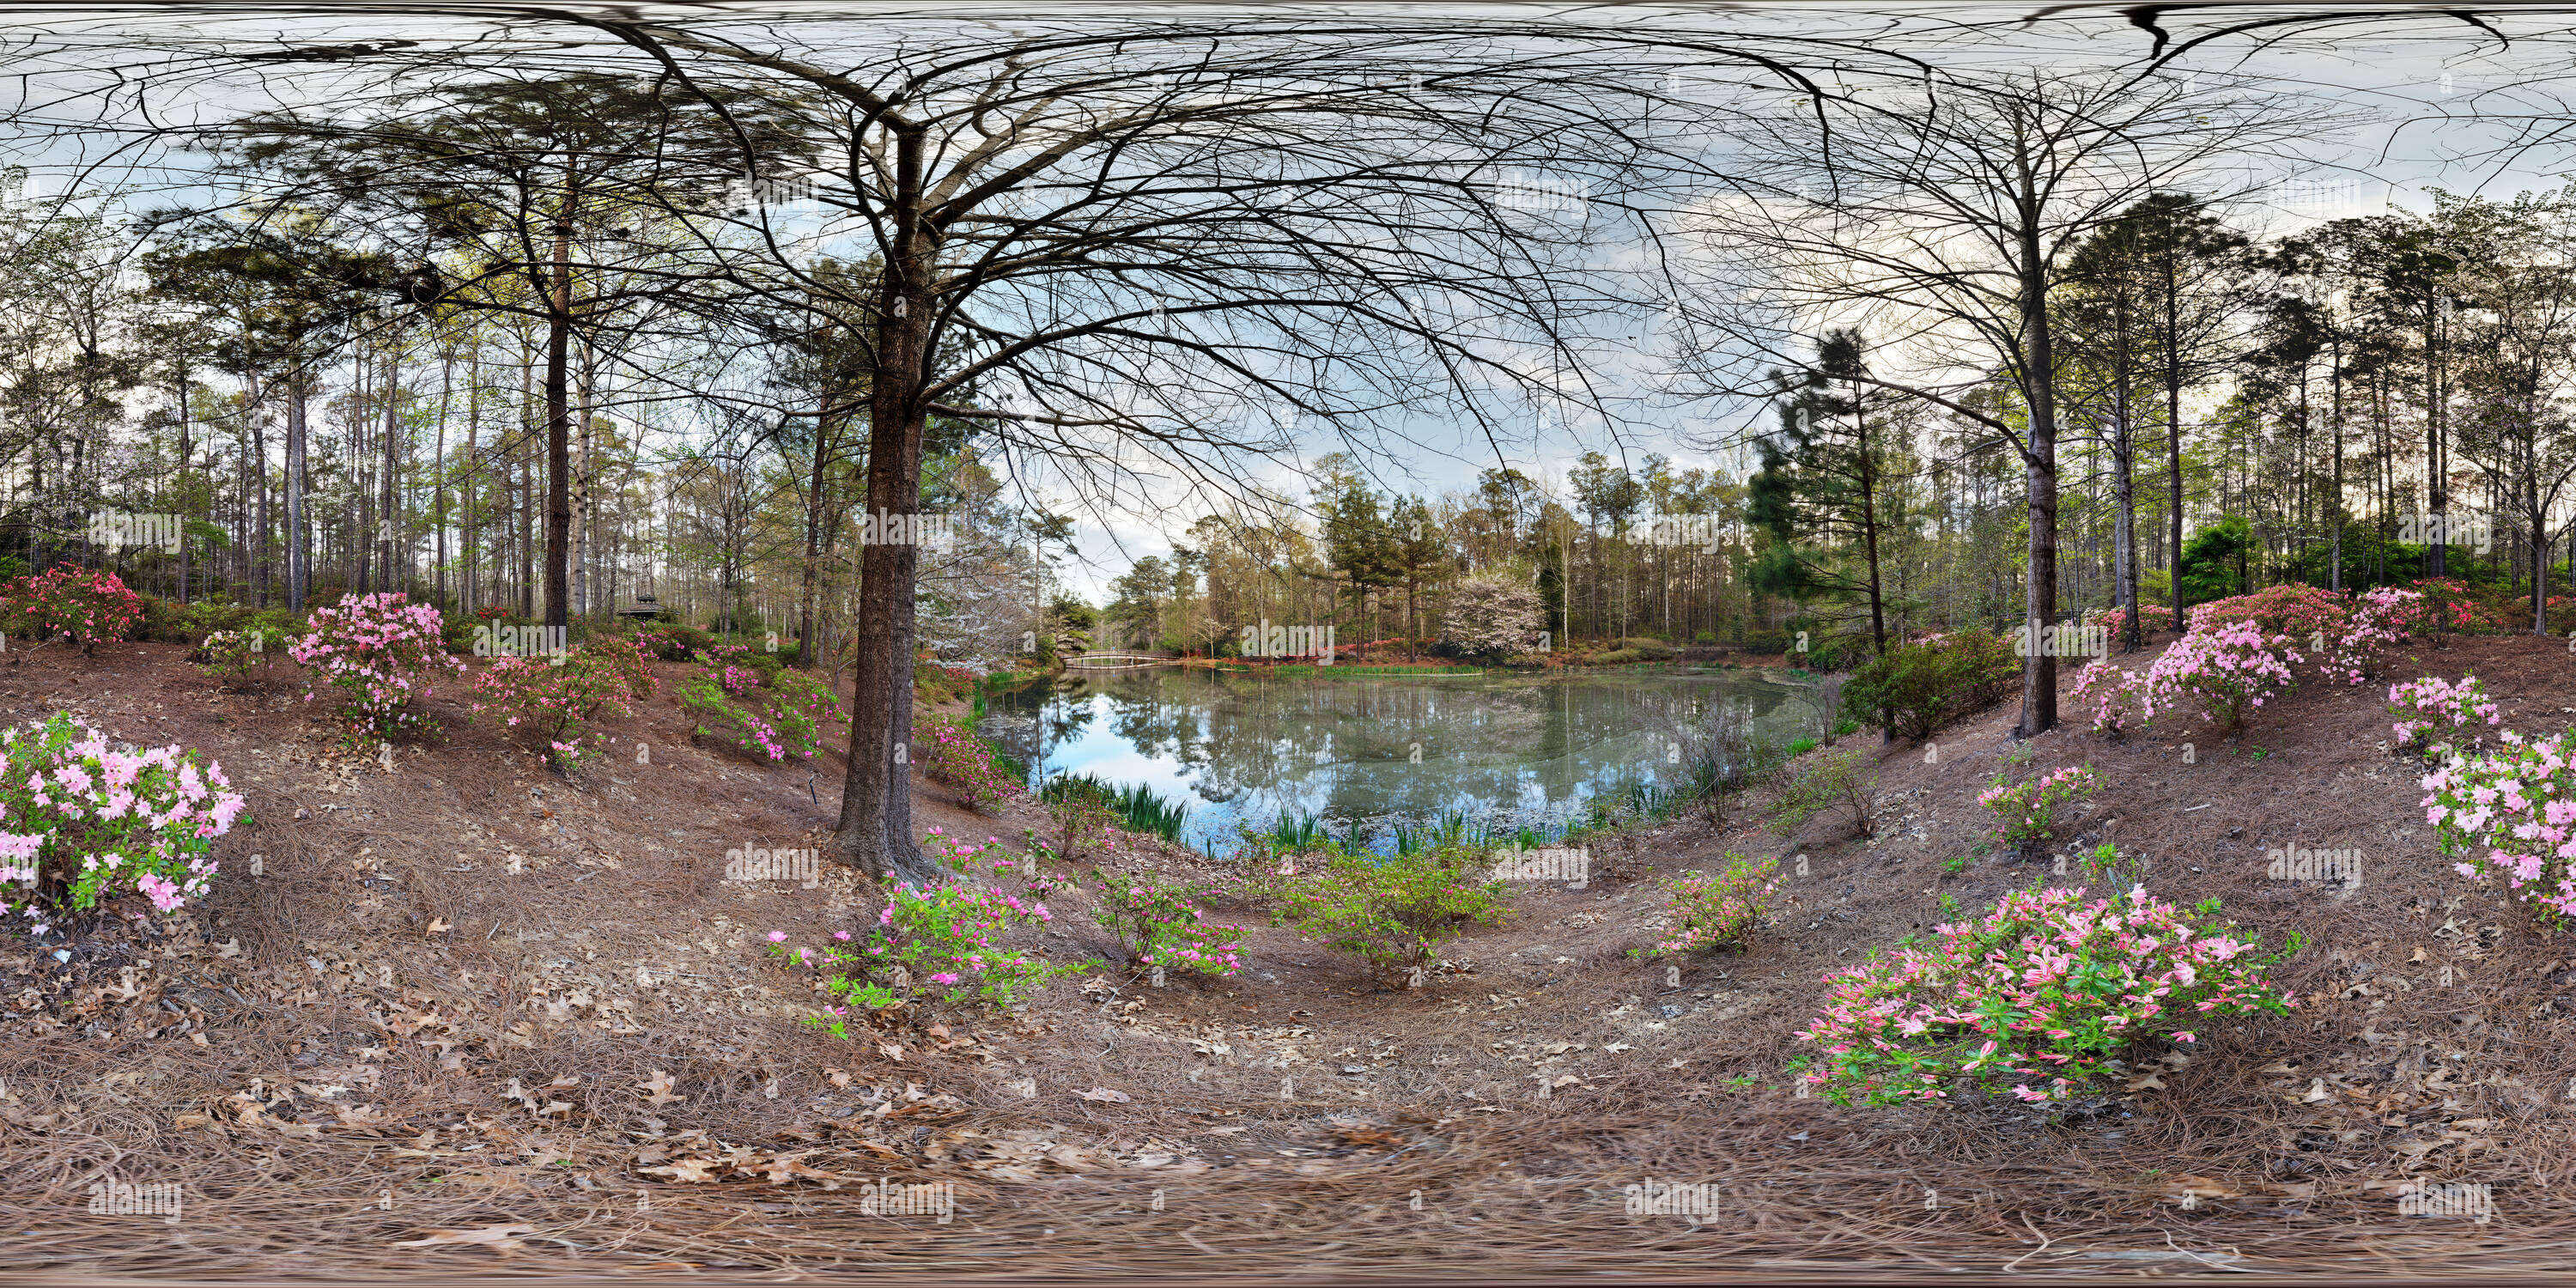 Visualizzazione panoramica a 360 gradi di Azalea ciotola, Callaway Gardens, GEORGIA, STATI UNITI D'AMERICA